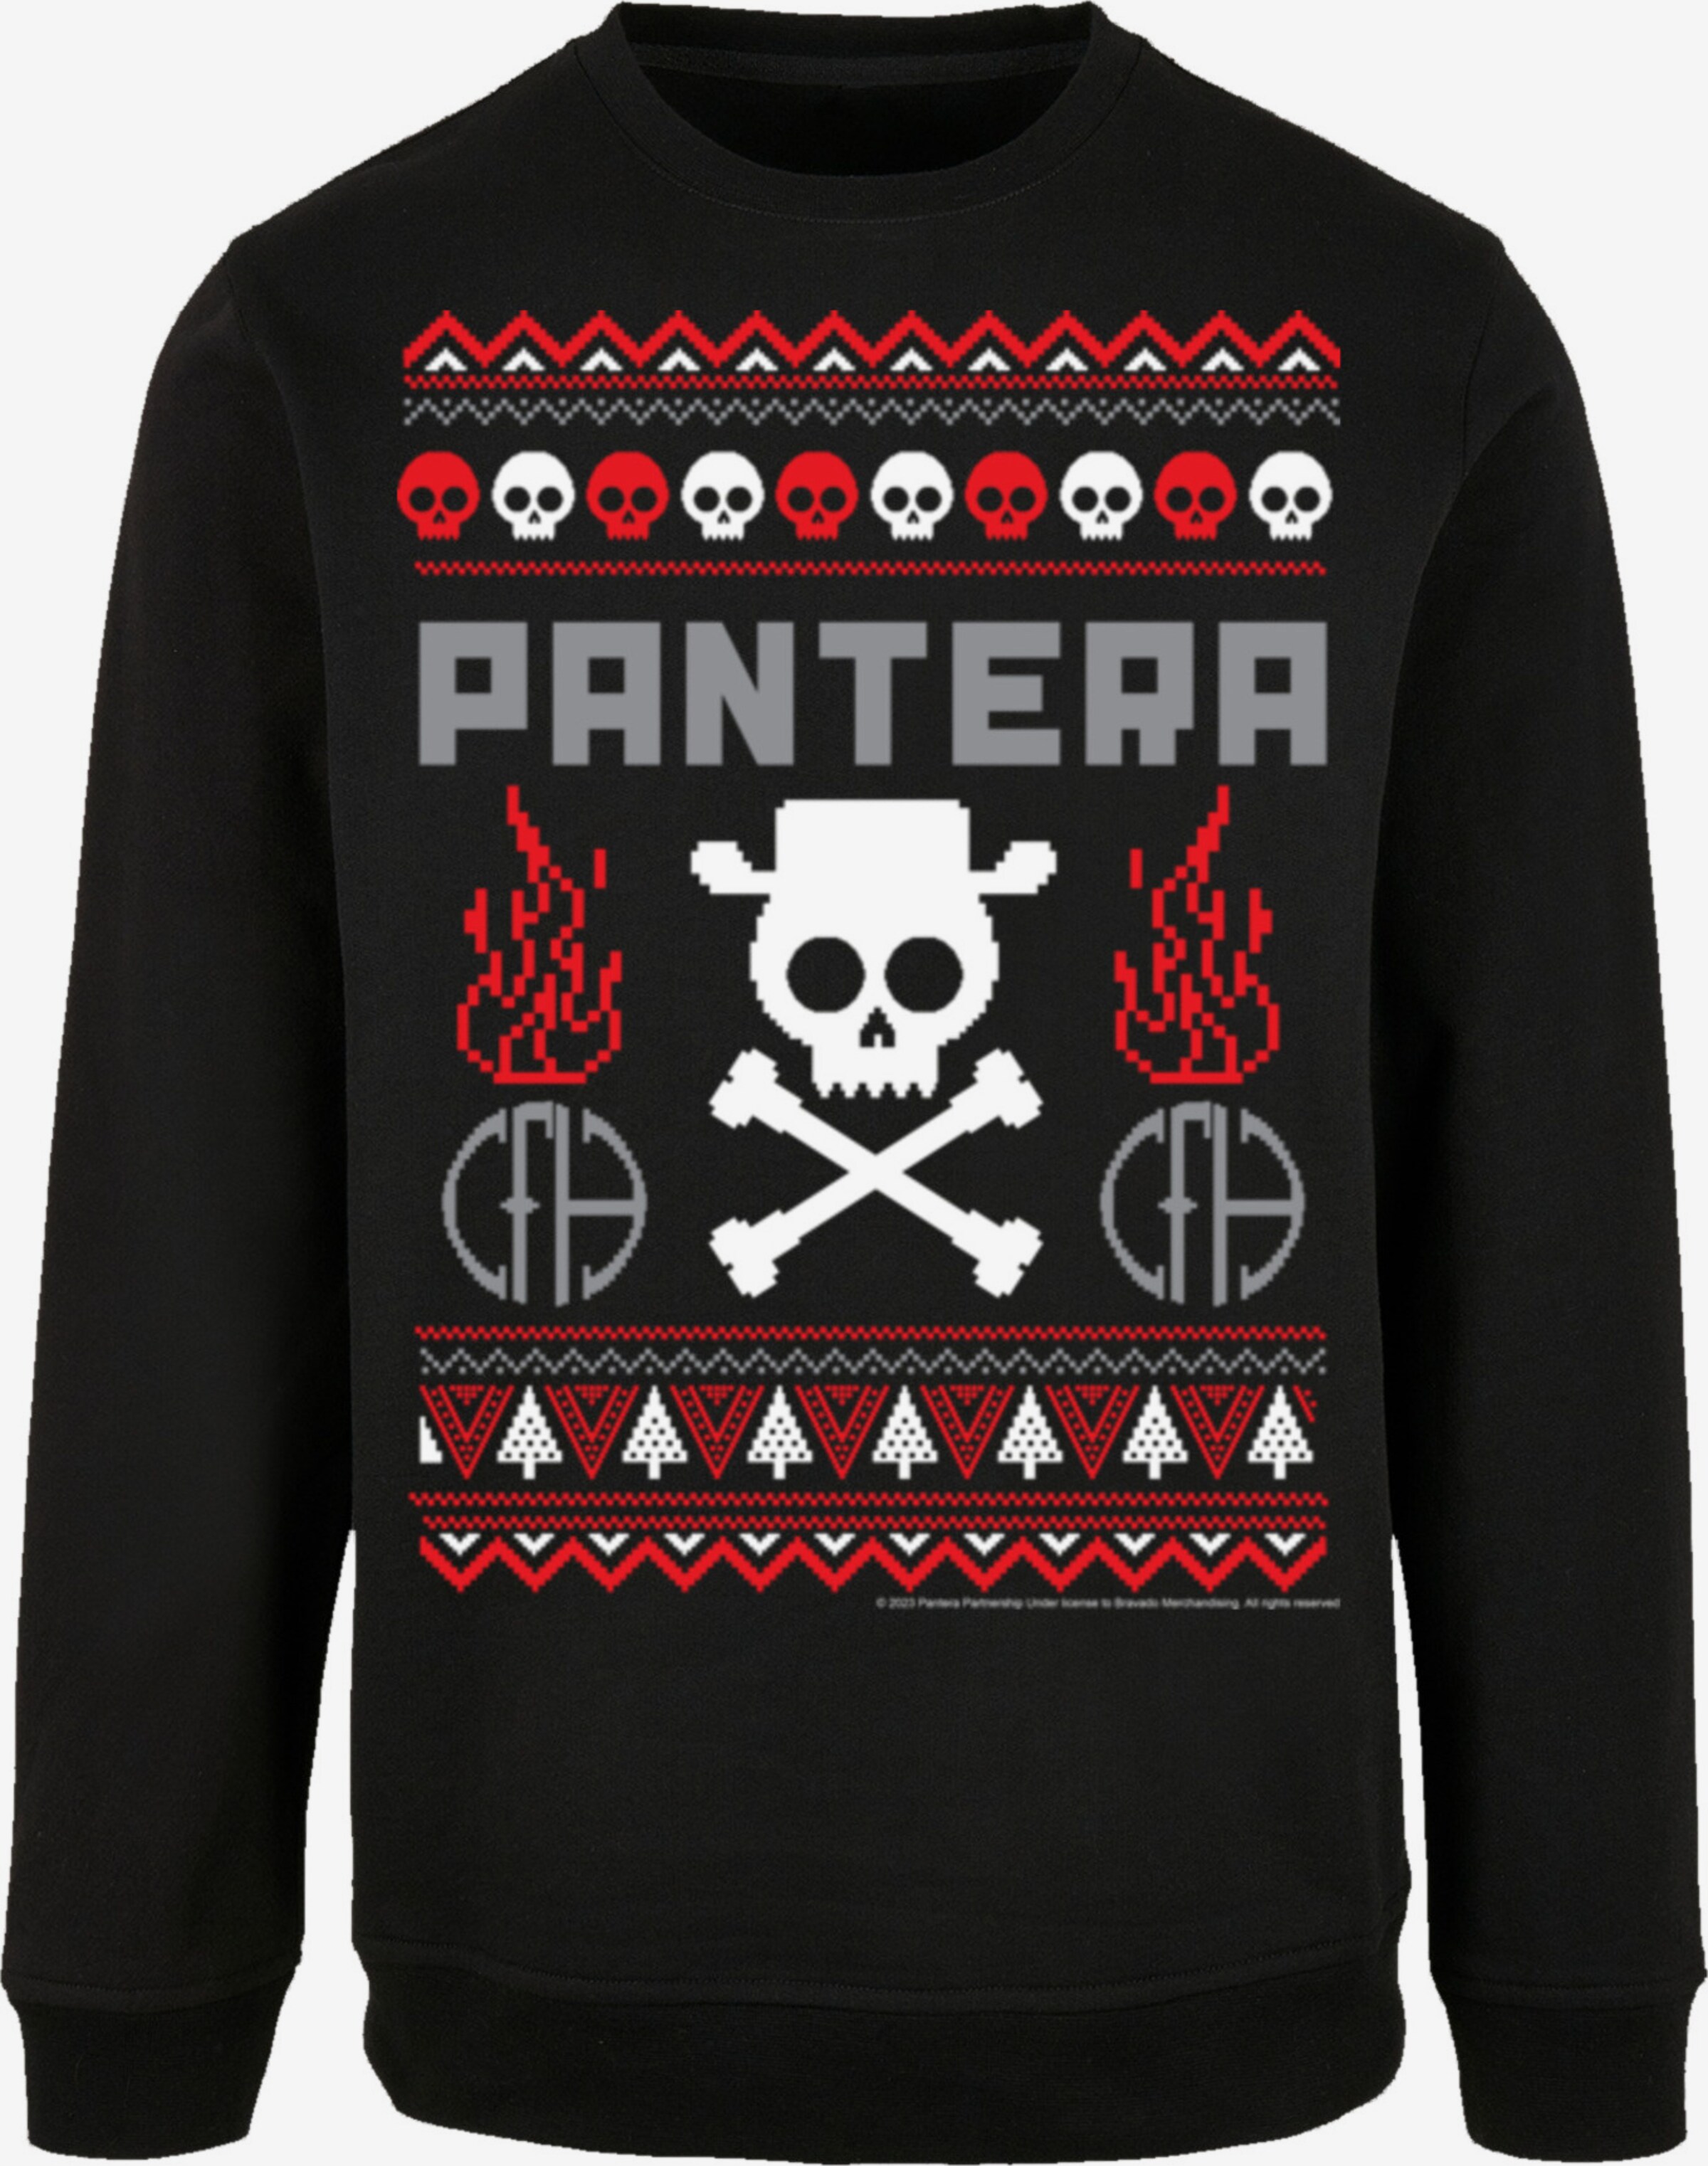 Noir | \'Pantera Sweat-shirt ABOUT Christmas\' YOU Weihnachten en F4NT4STIC